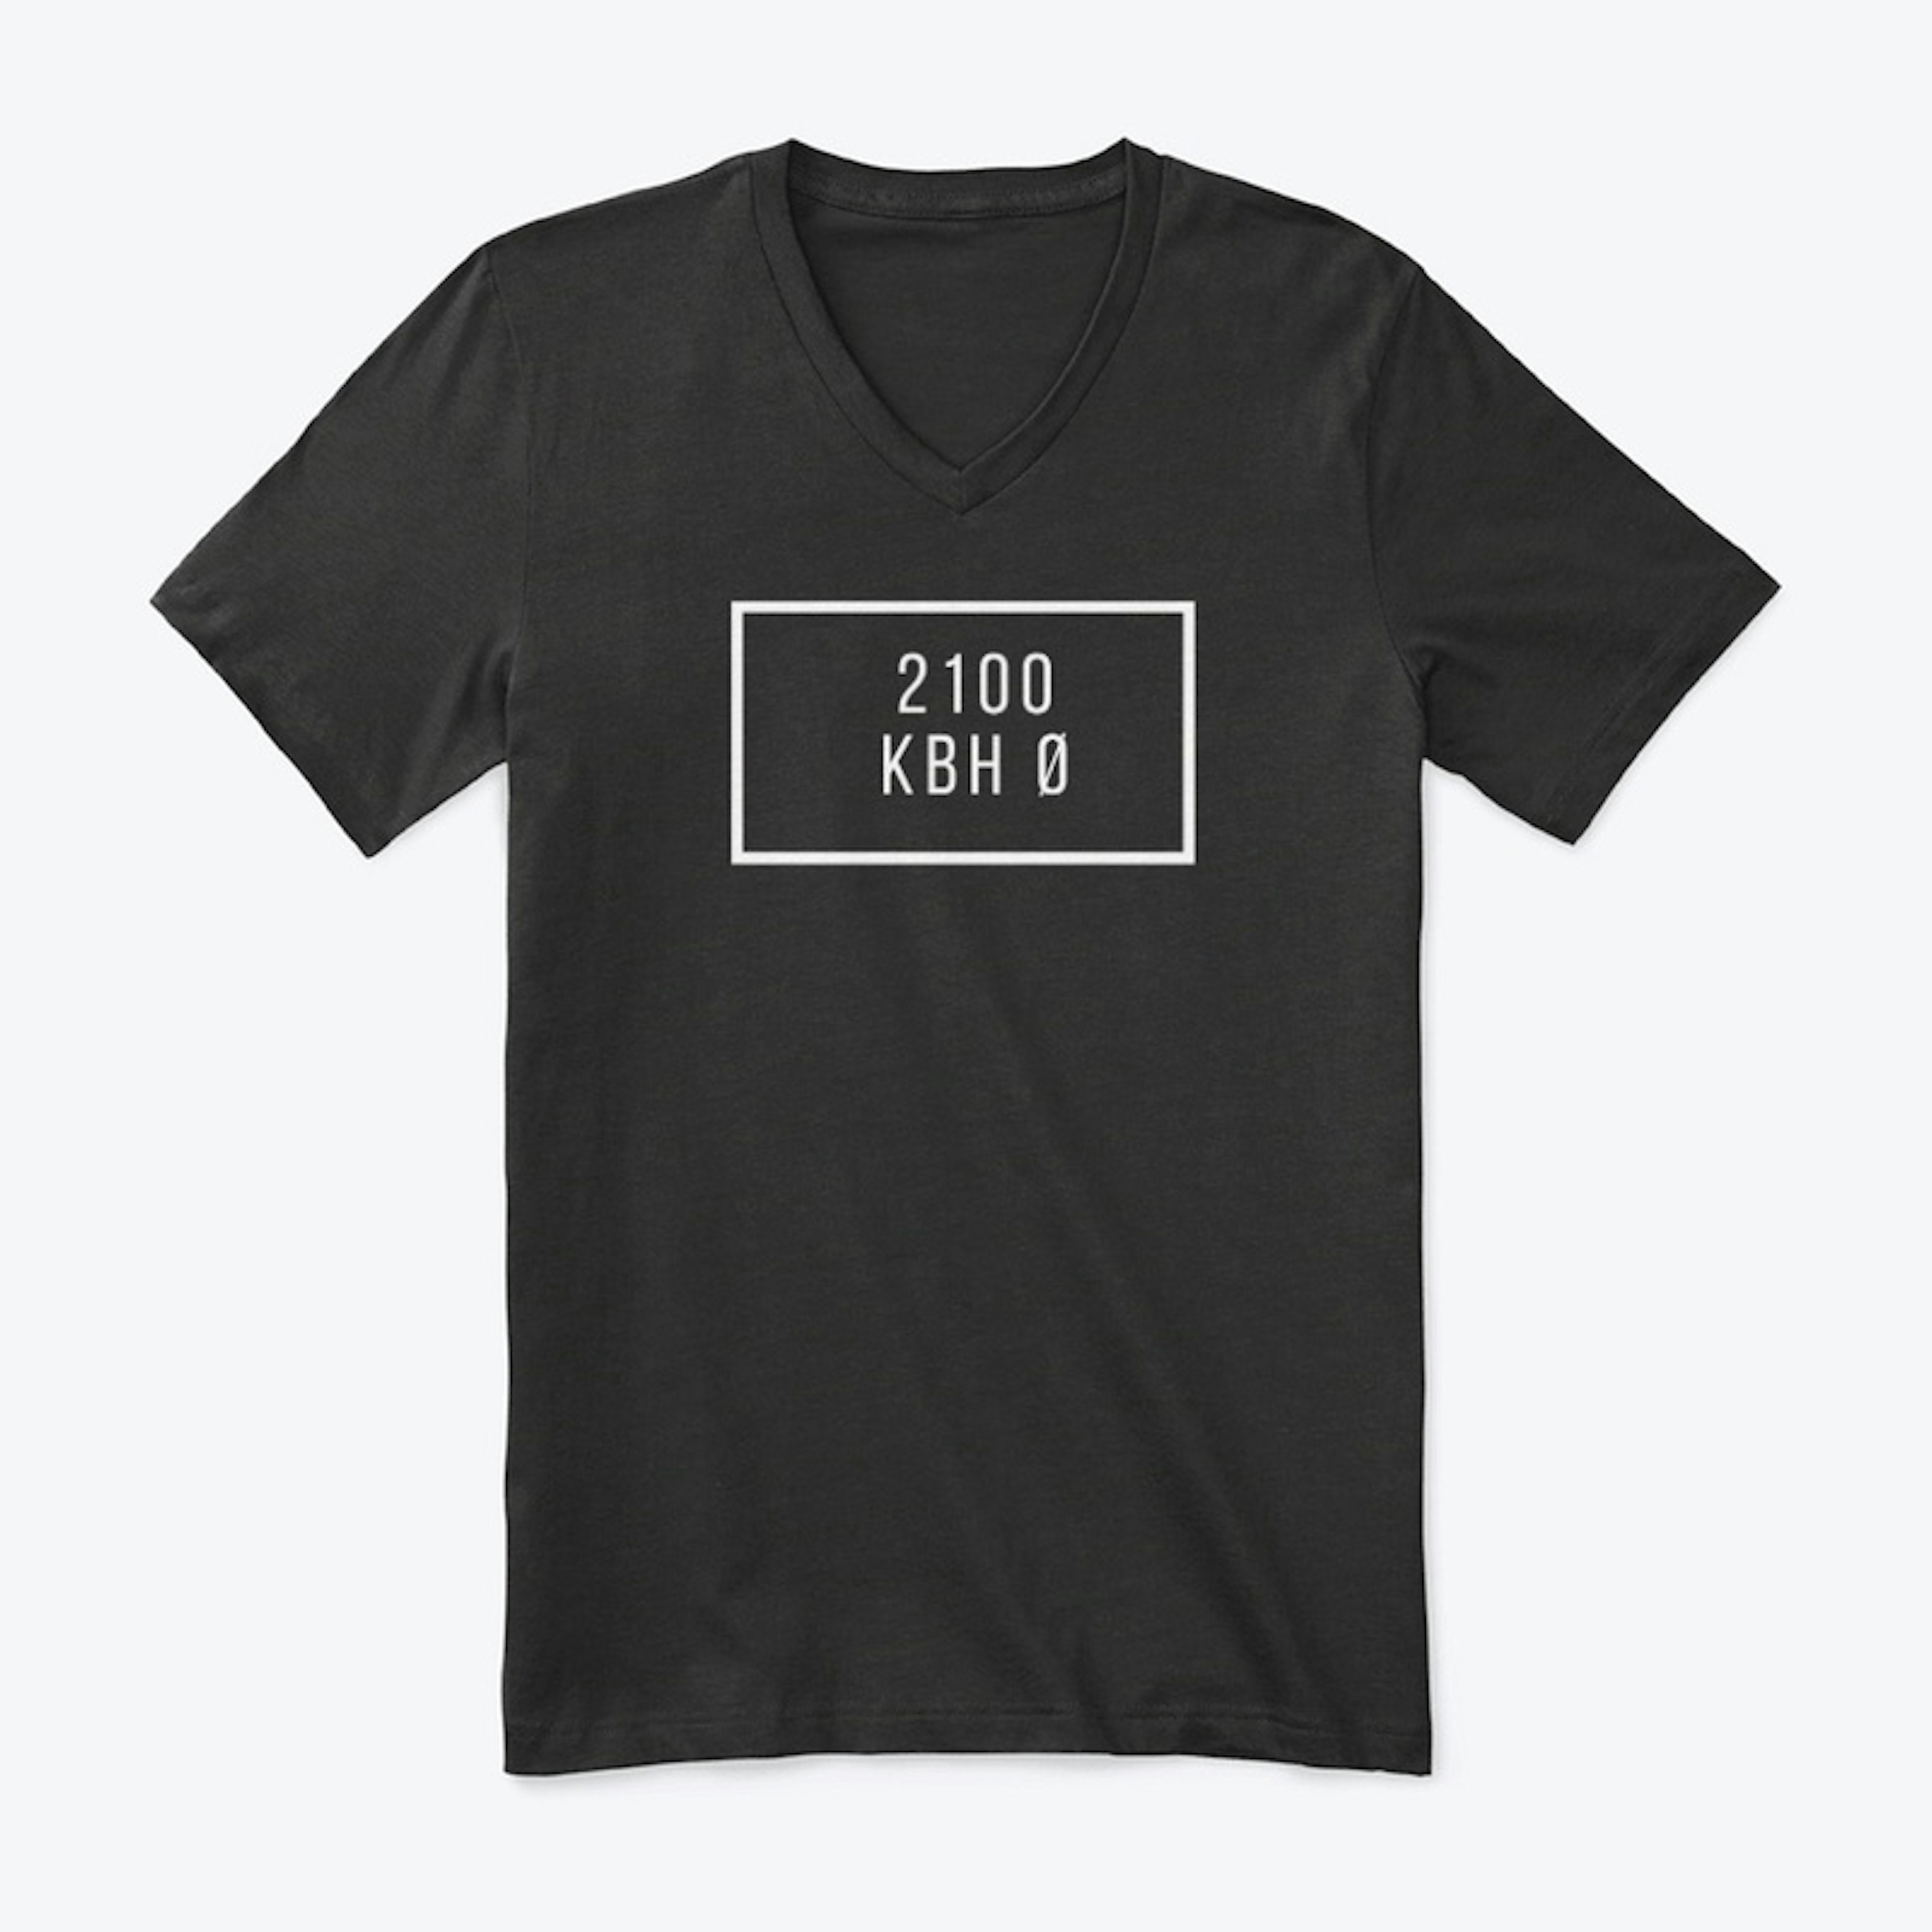 2100 KBH Ø T-shirt